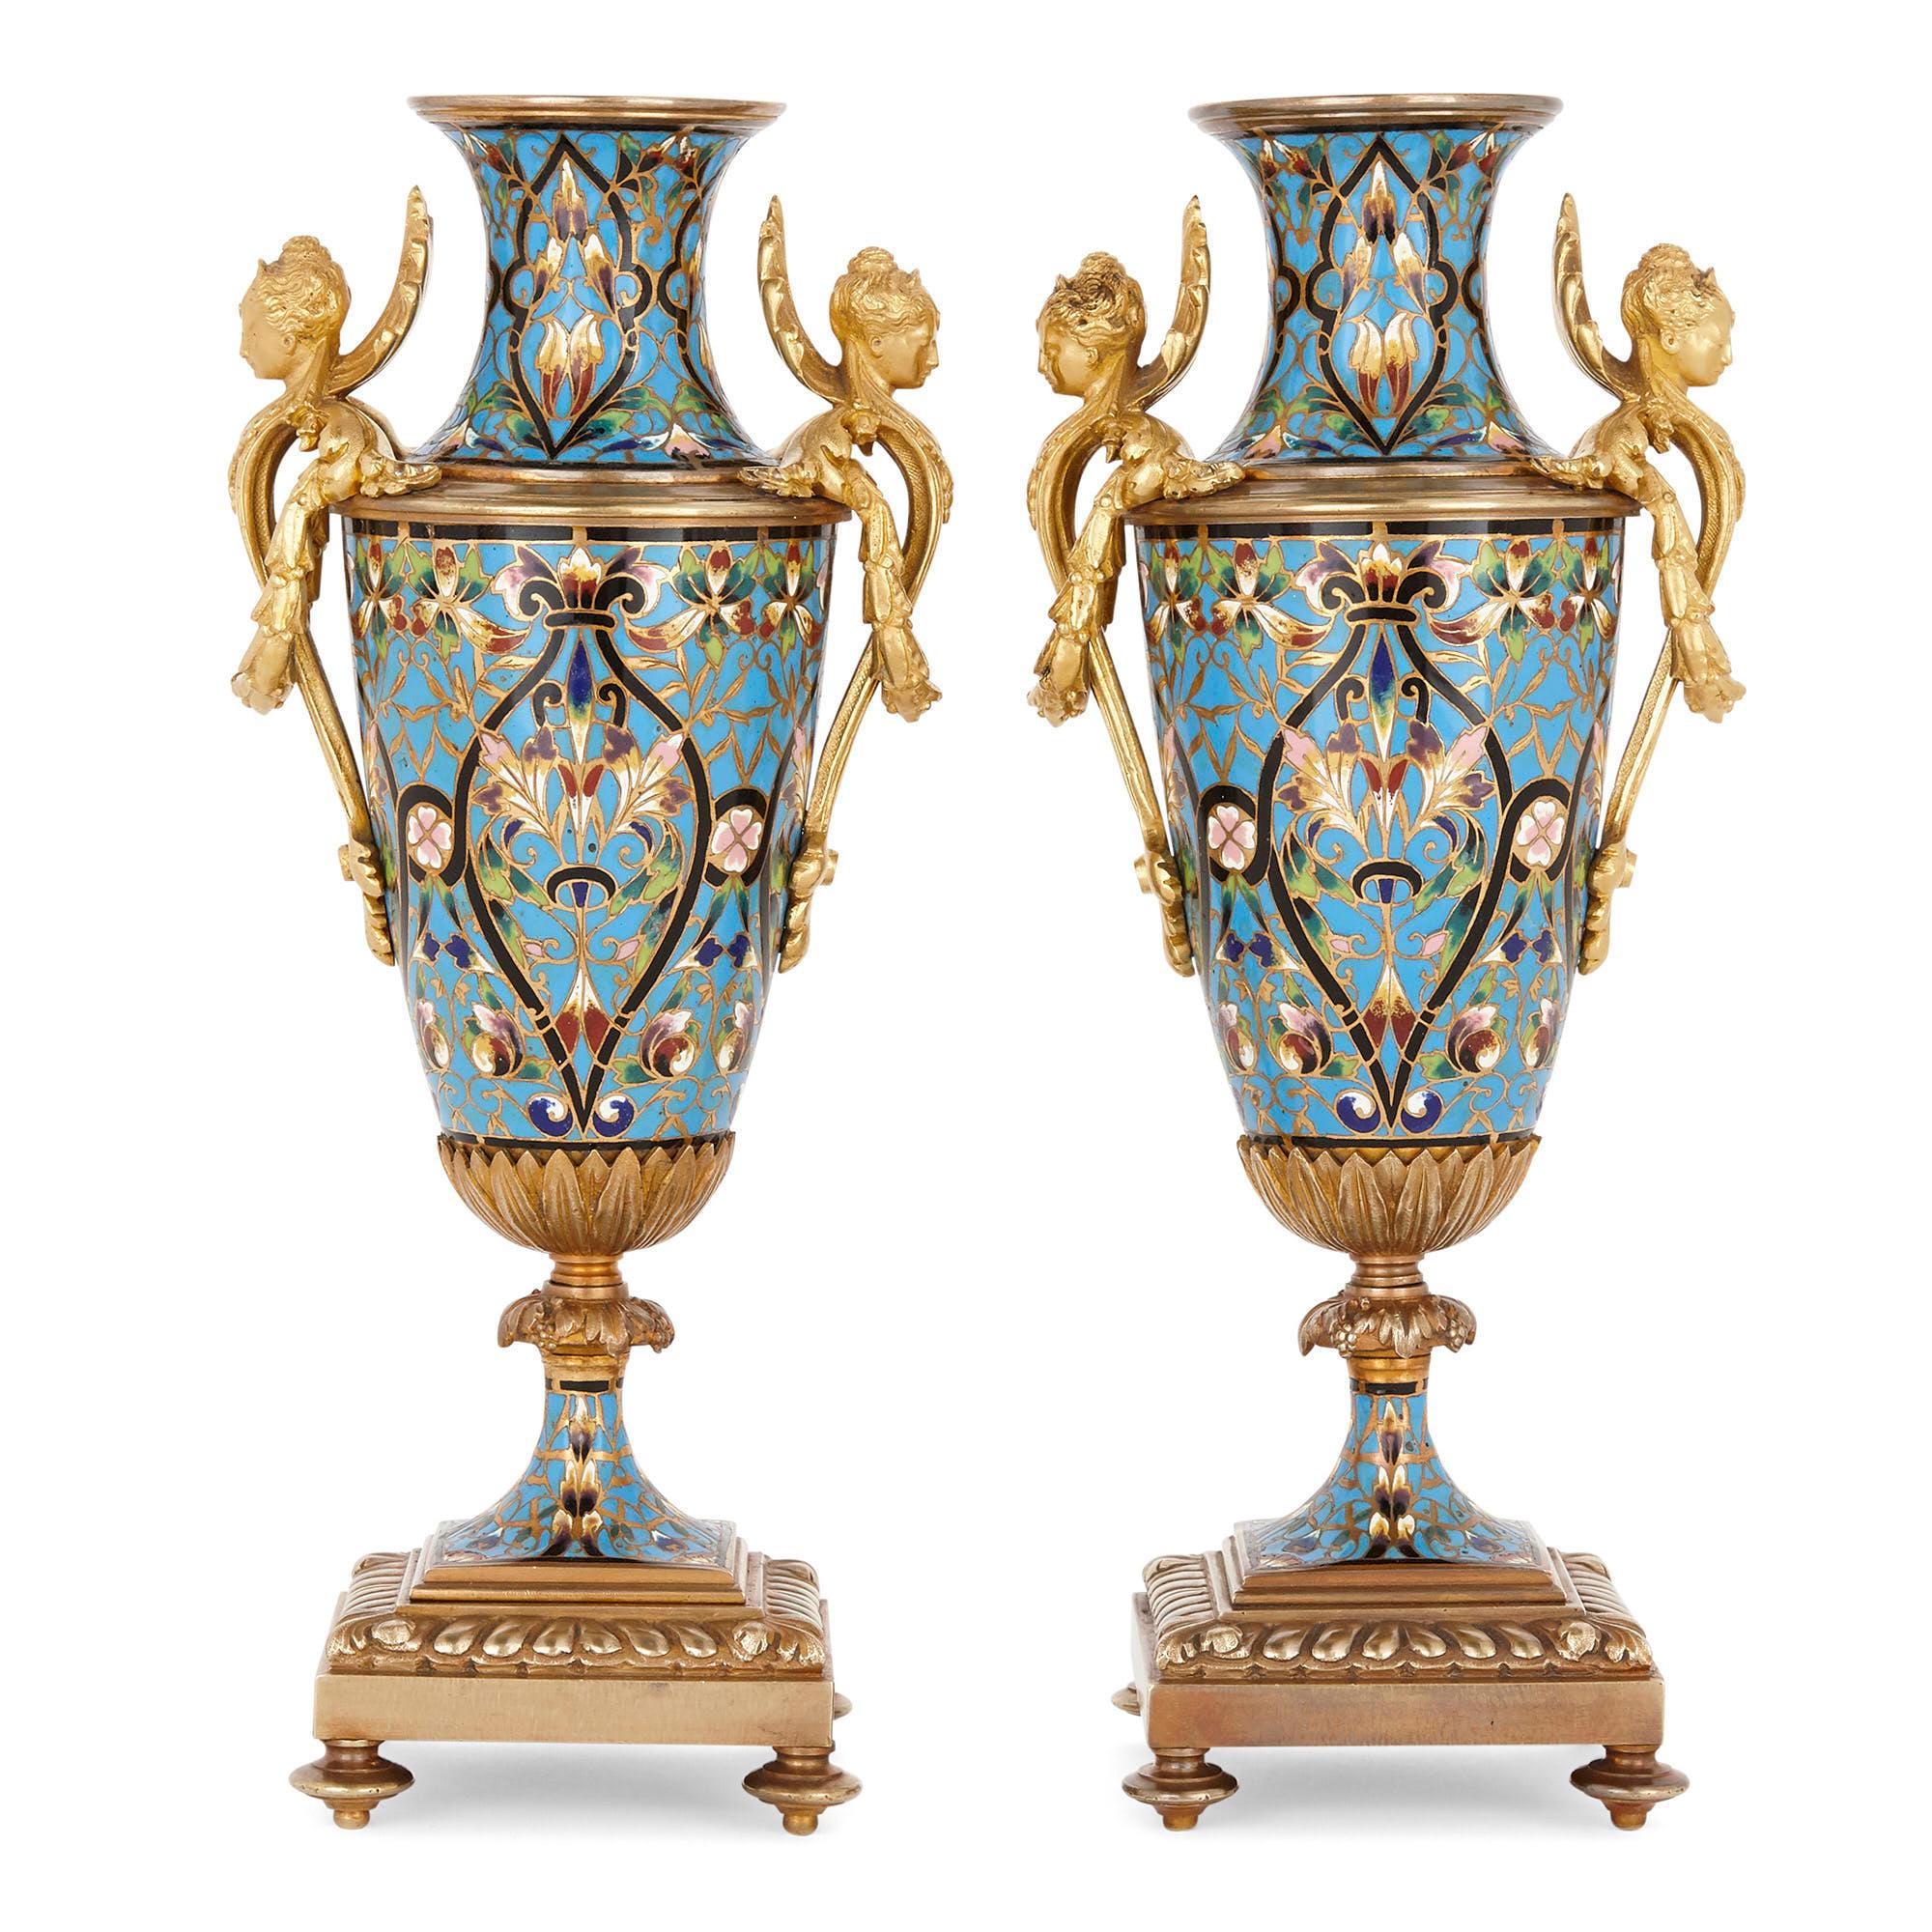 Dieses prächtige Vasenpaar ist aus vergoldeter Bronze und Champlevé-Email im unverwechselbaren, visuell beeindruckenden Renaissance-Revival-Stil gefertigt. Der zylindrische Körper jeder Vase ist reichlich mit Champlevé-Email verziert, das in Form